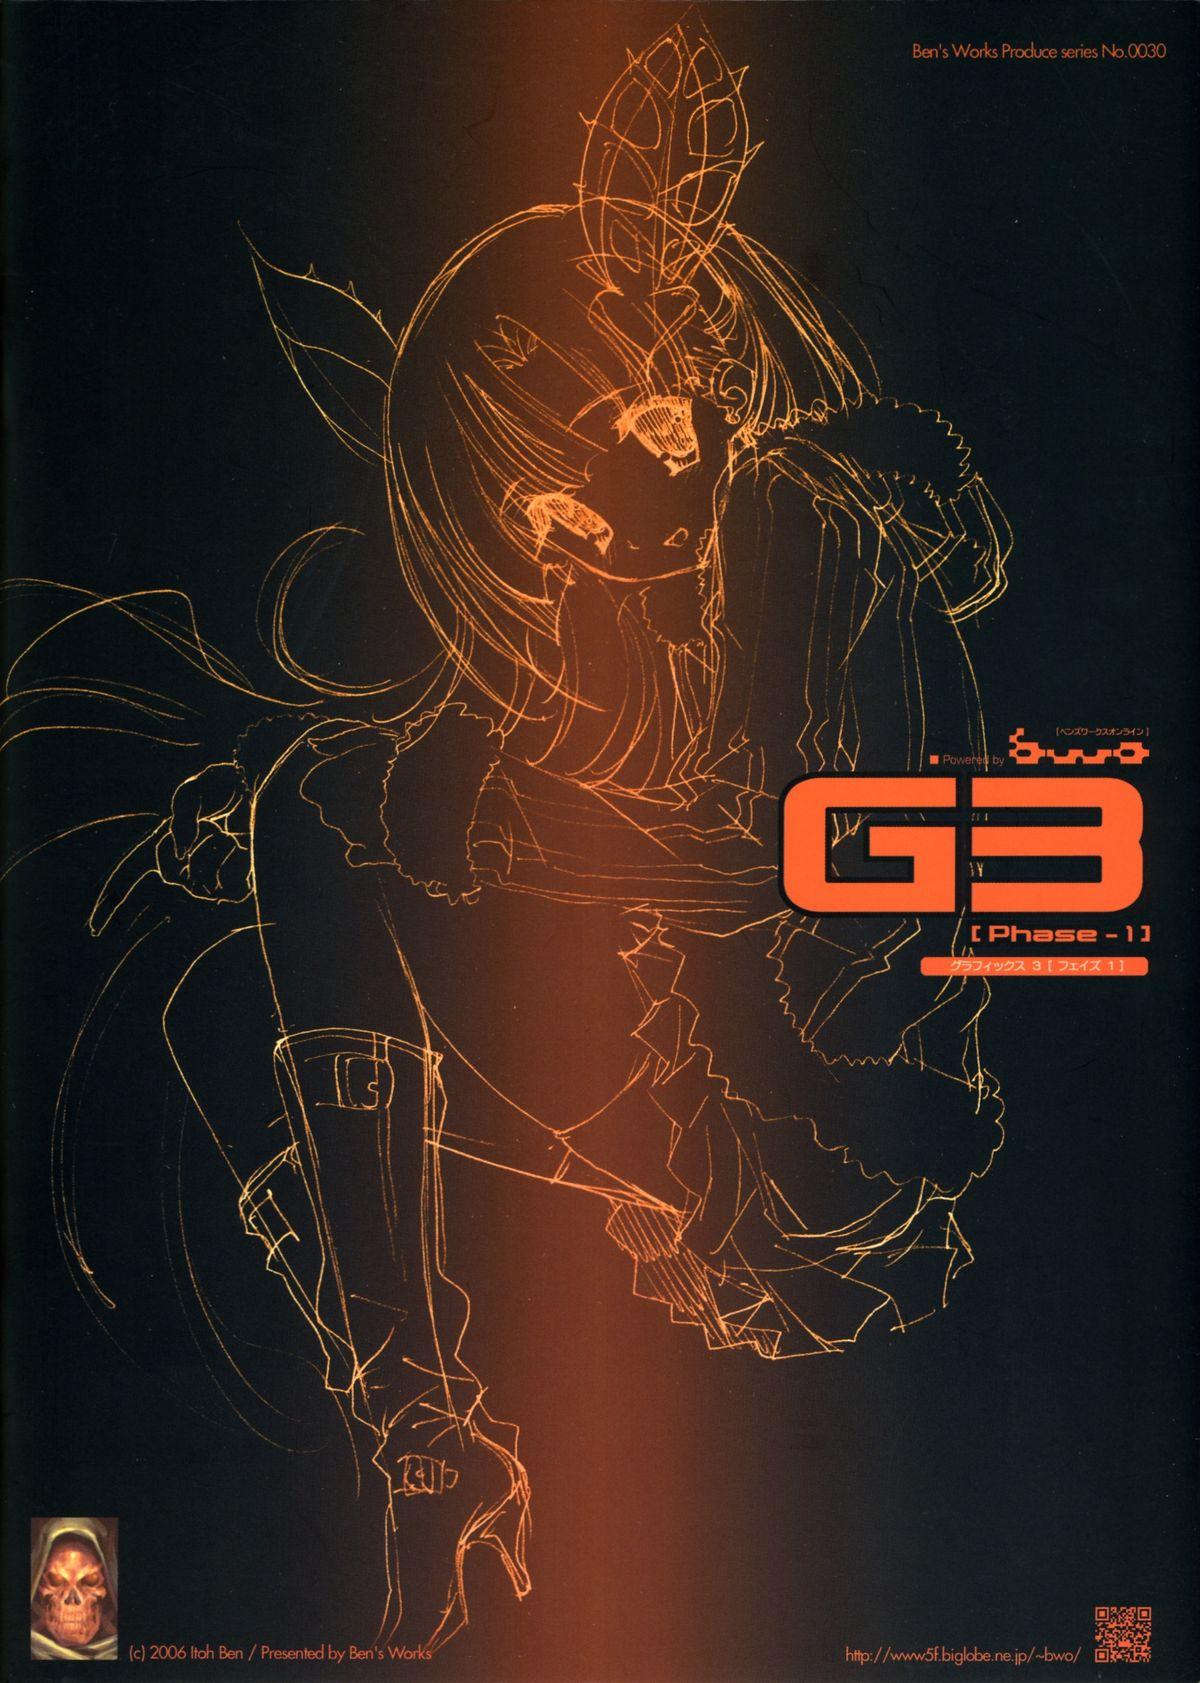 G3 Phase-1 34